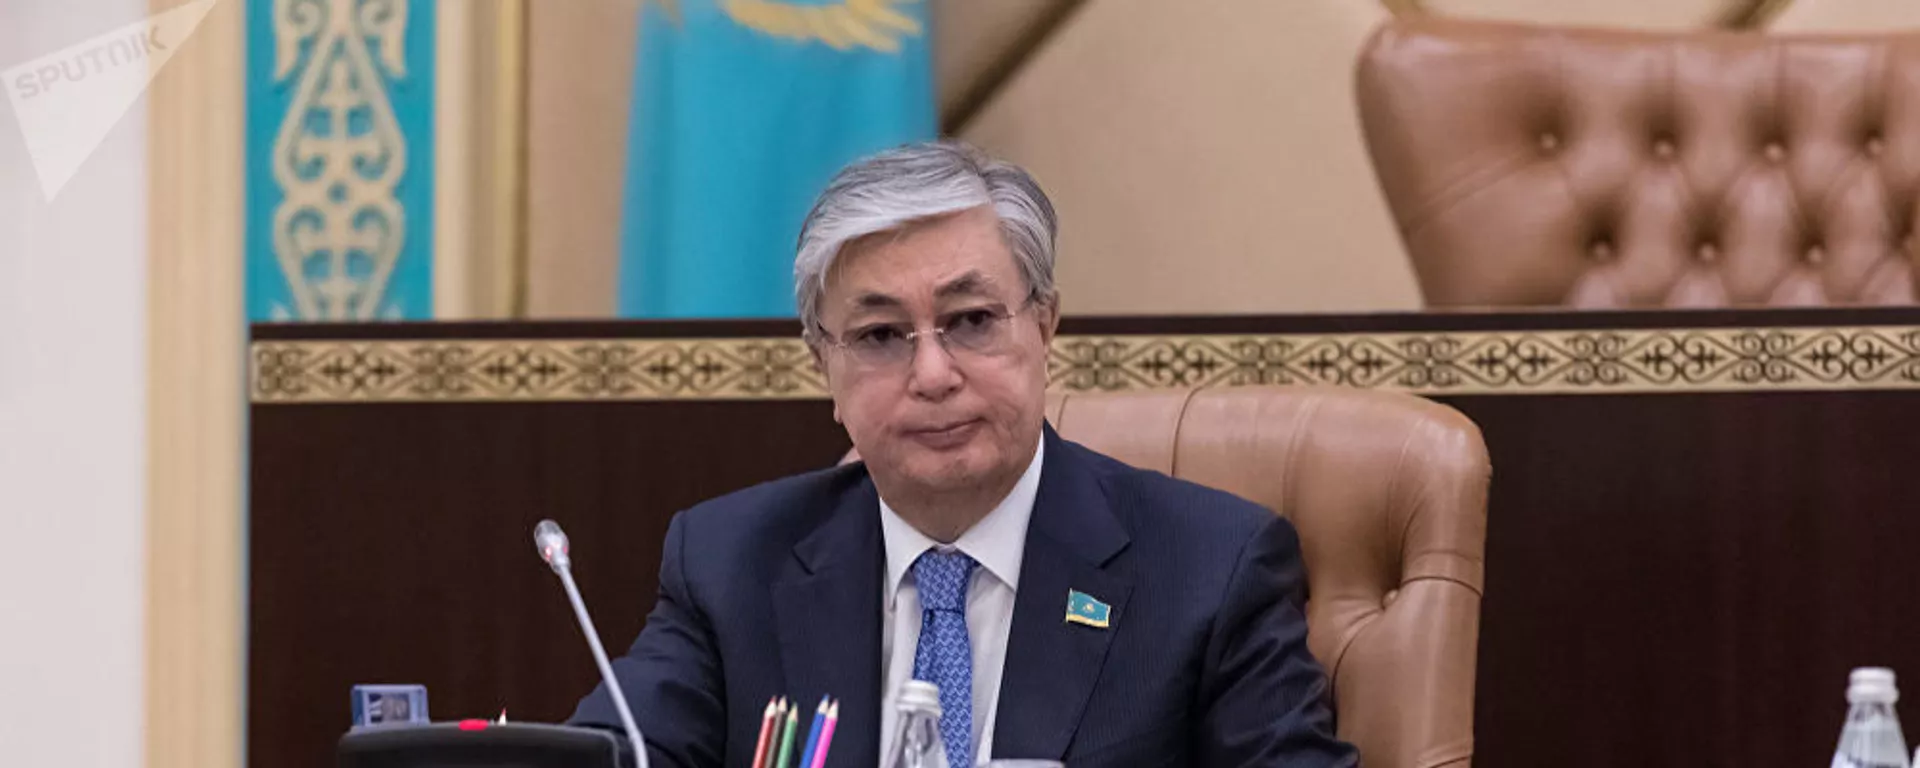 托克耶夫将担任哈萨克斯坦国家安全委员会领导一下面开始职 - 彩神网卫星通讯社, 1920, 05.01.2022